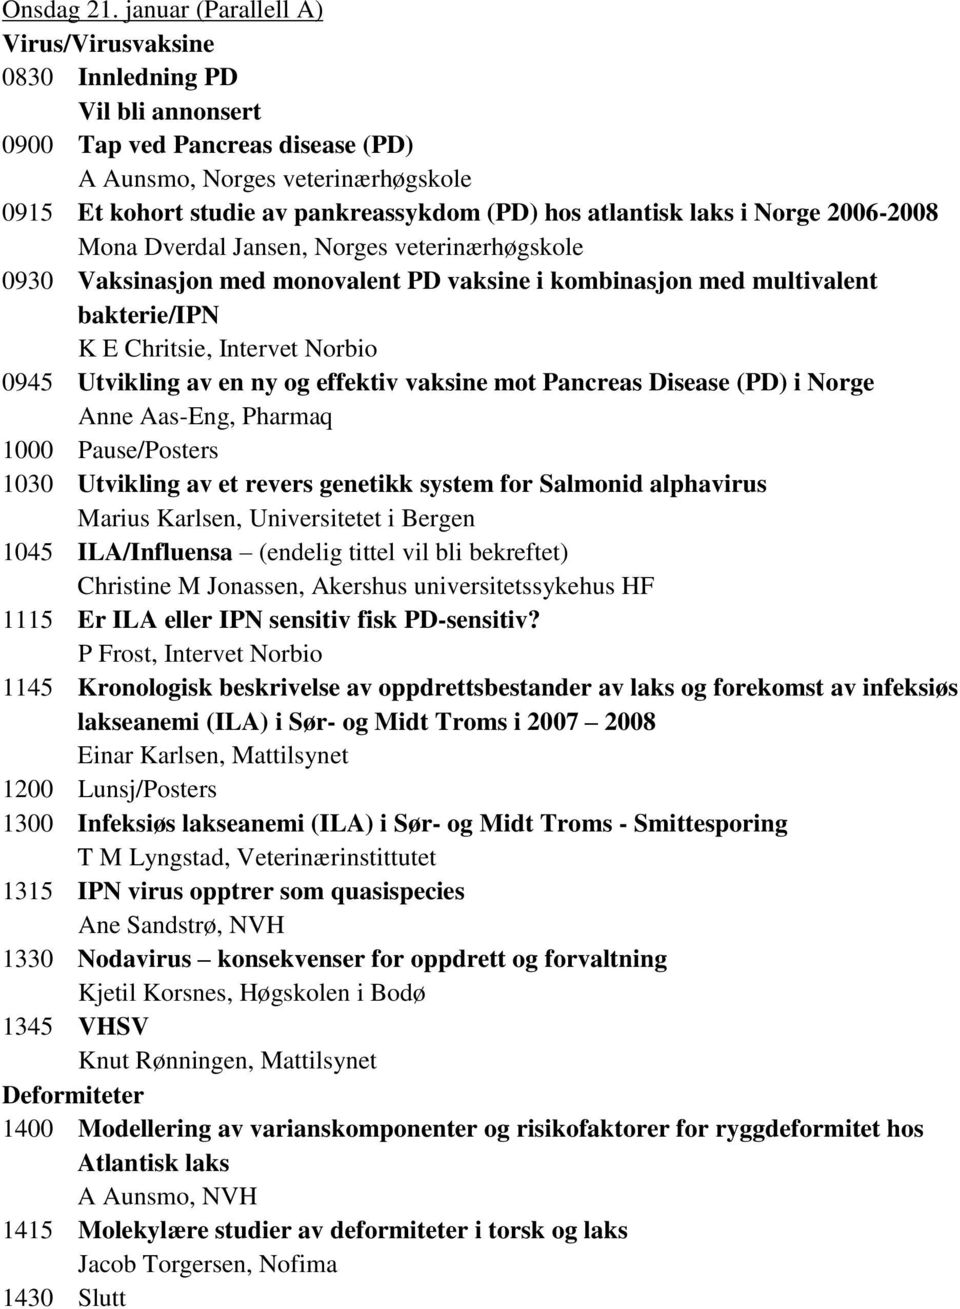 atlantisk laks i Norge 2006-2008 Mona Dverdal Jansen, Norges veterinærhøgskole 0930 Vaksinasjon med monovalent PD vaksine i kombinasjon med multivalent bakterie/ipn K E Chritsie, Intervet Norbio 0945